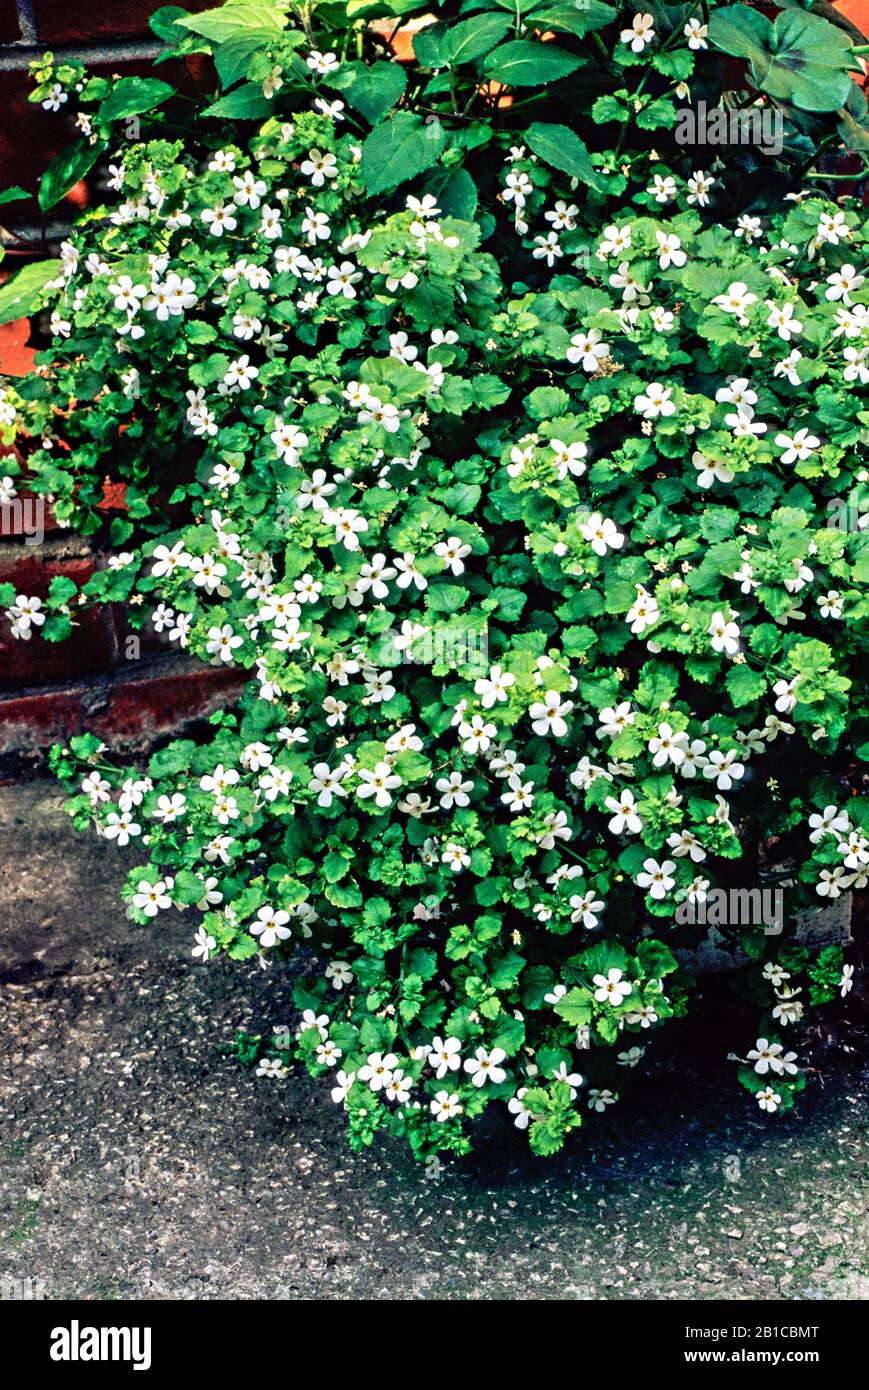 Bacopa Schneeflocke in einer Blume, die über die Seite eines Behälters hinaufliegt. Kann im Sommer in Körben und Behältern oder als Bodenabdeckung in Grenzen verwendet werden. Stockfoto